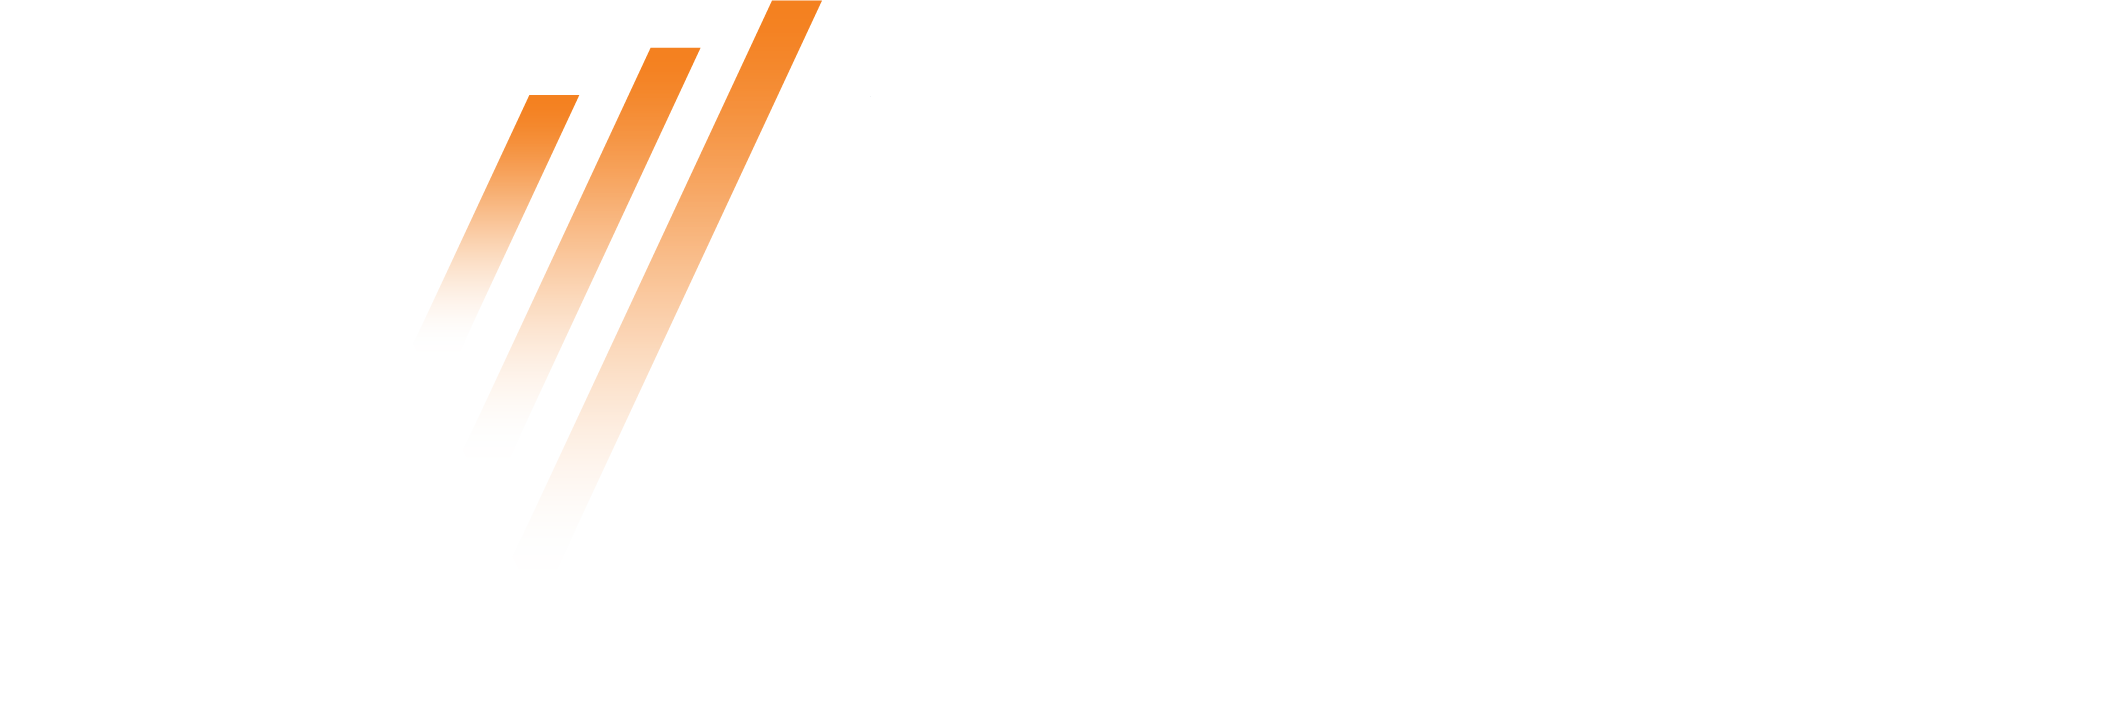 Vital Energy logo large for dark backgrounds (transparent PNG)